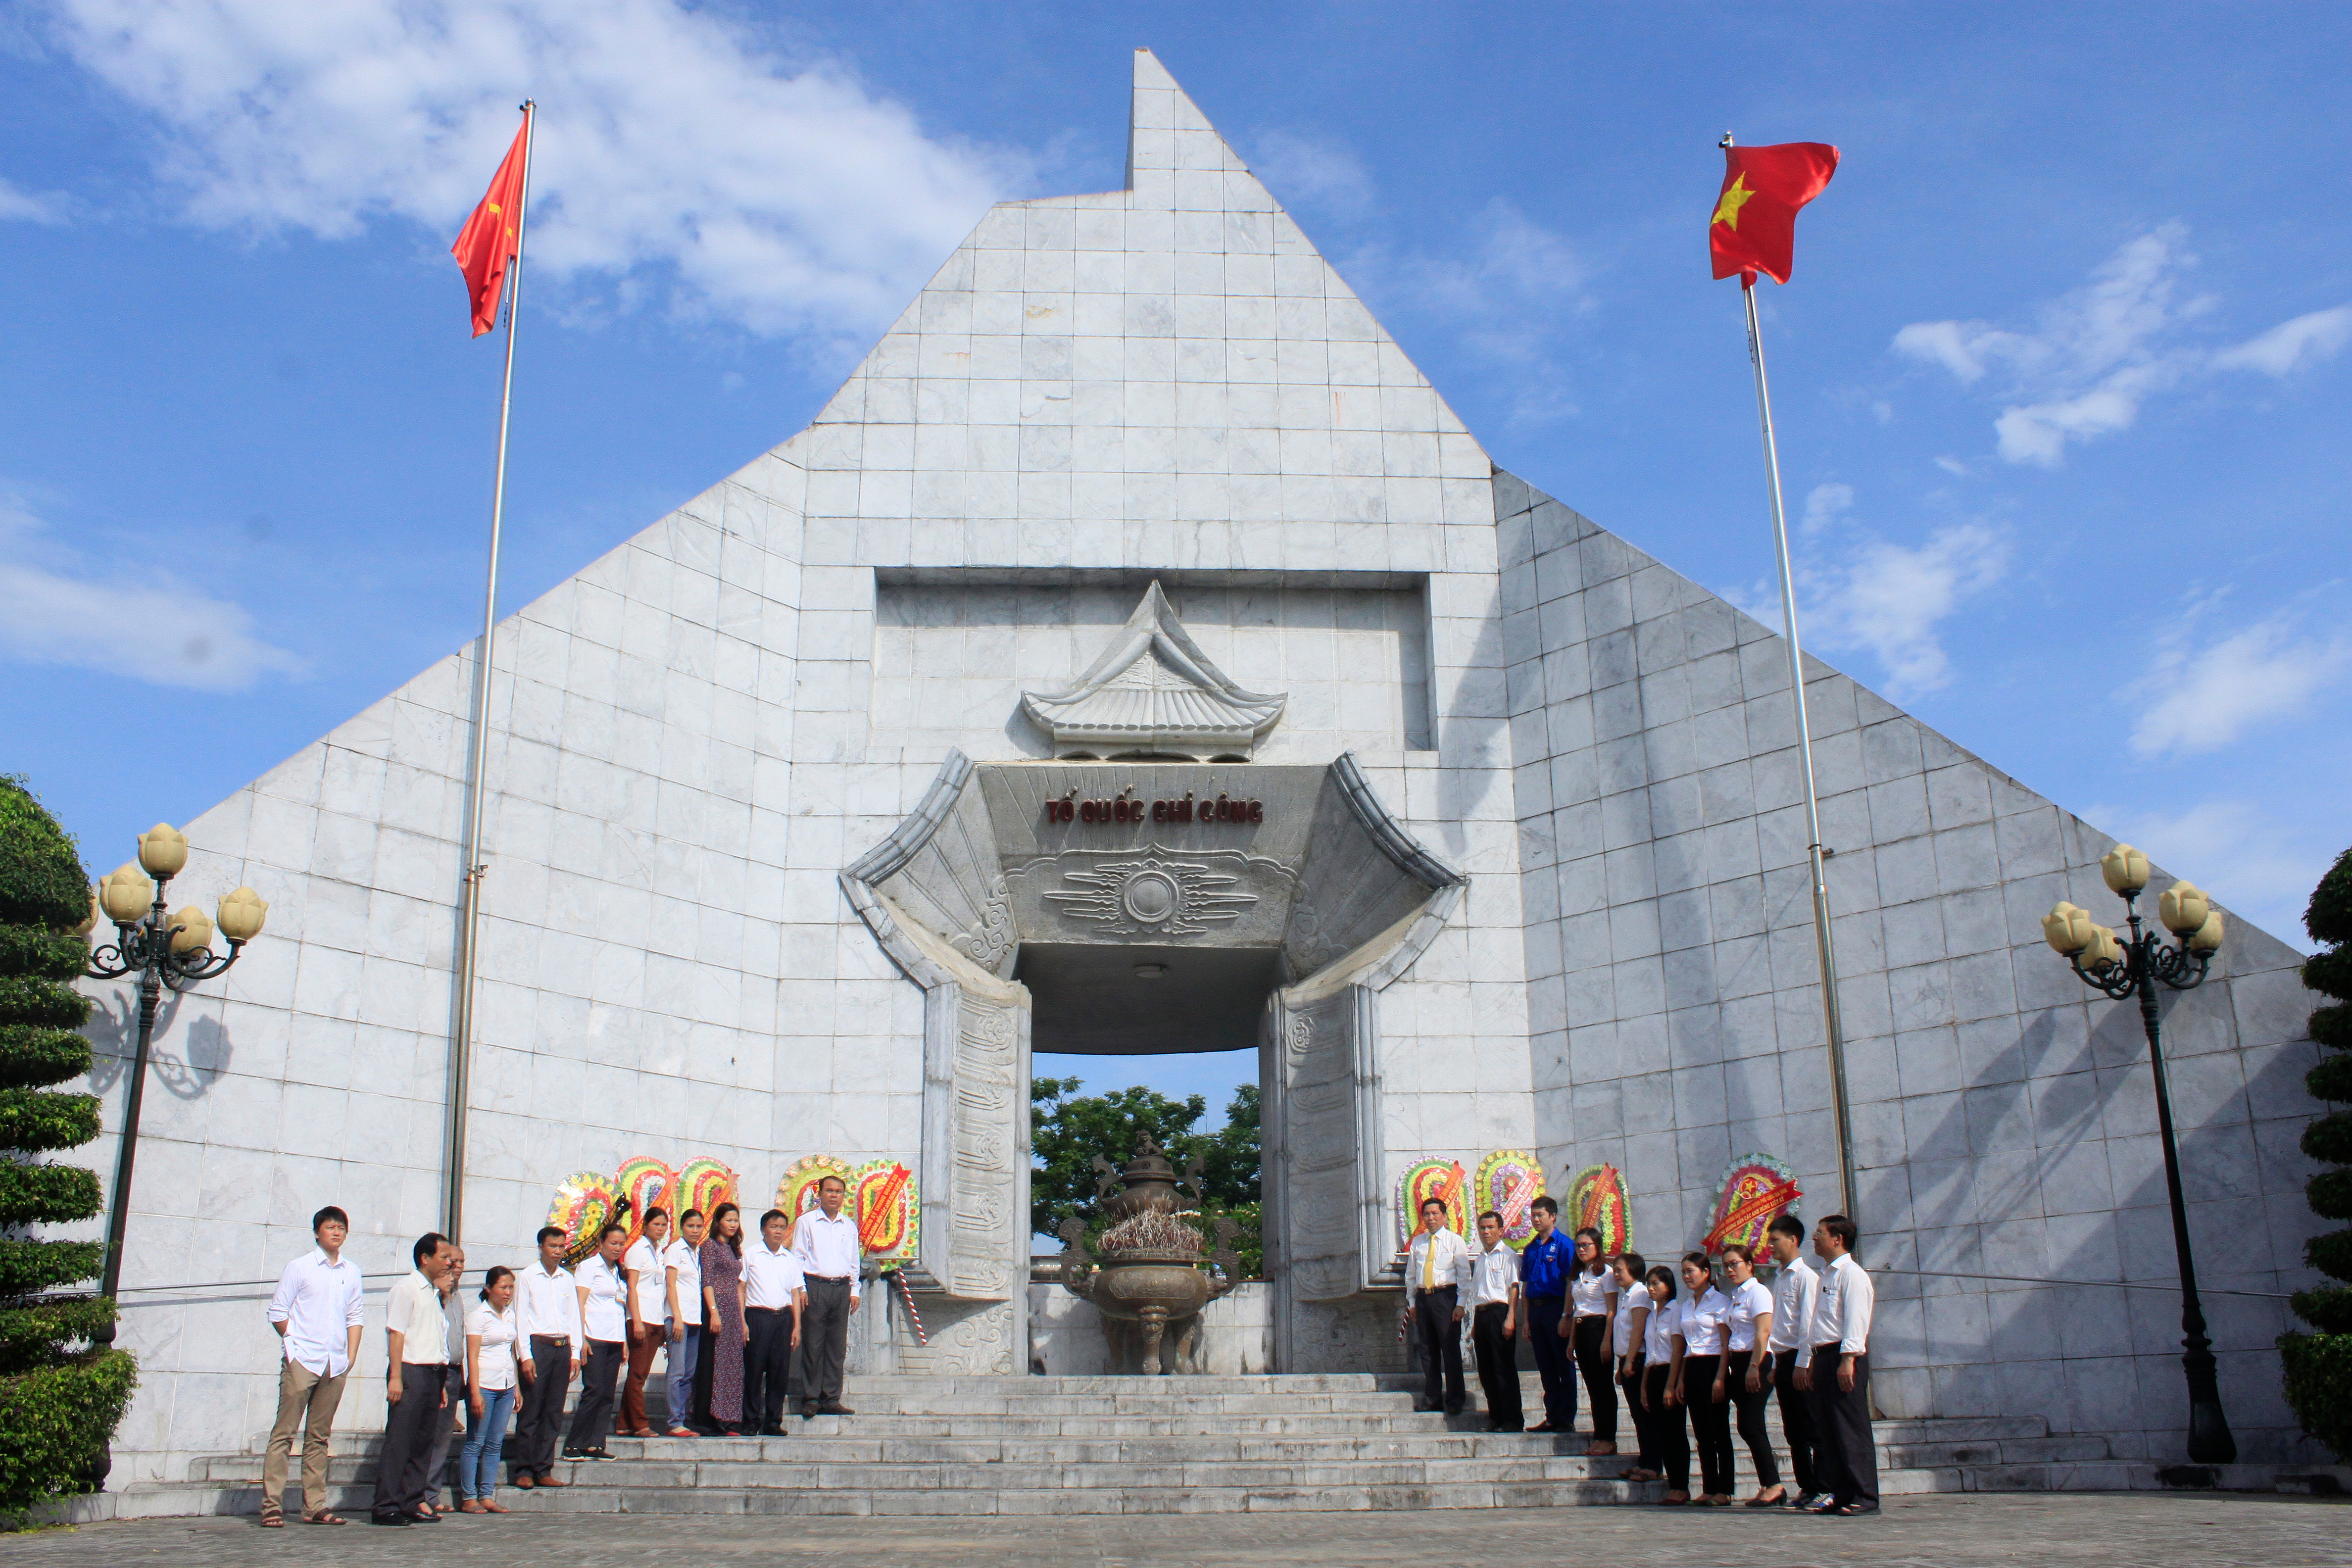 Đoàn công tác Bưu điện tỉnh và lãnh đạo huyện Anh Sơn dâng hương tại Đài tưởng niệm Nghĩa trang Liệt sỹ Quốc tế Việt - Lào. Ảnh: Thế Tuấn